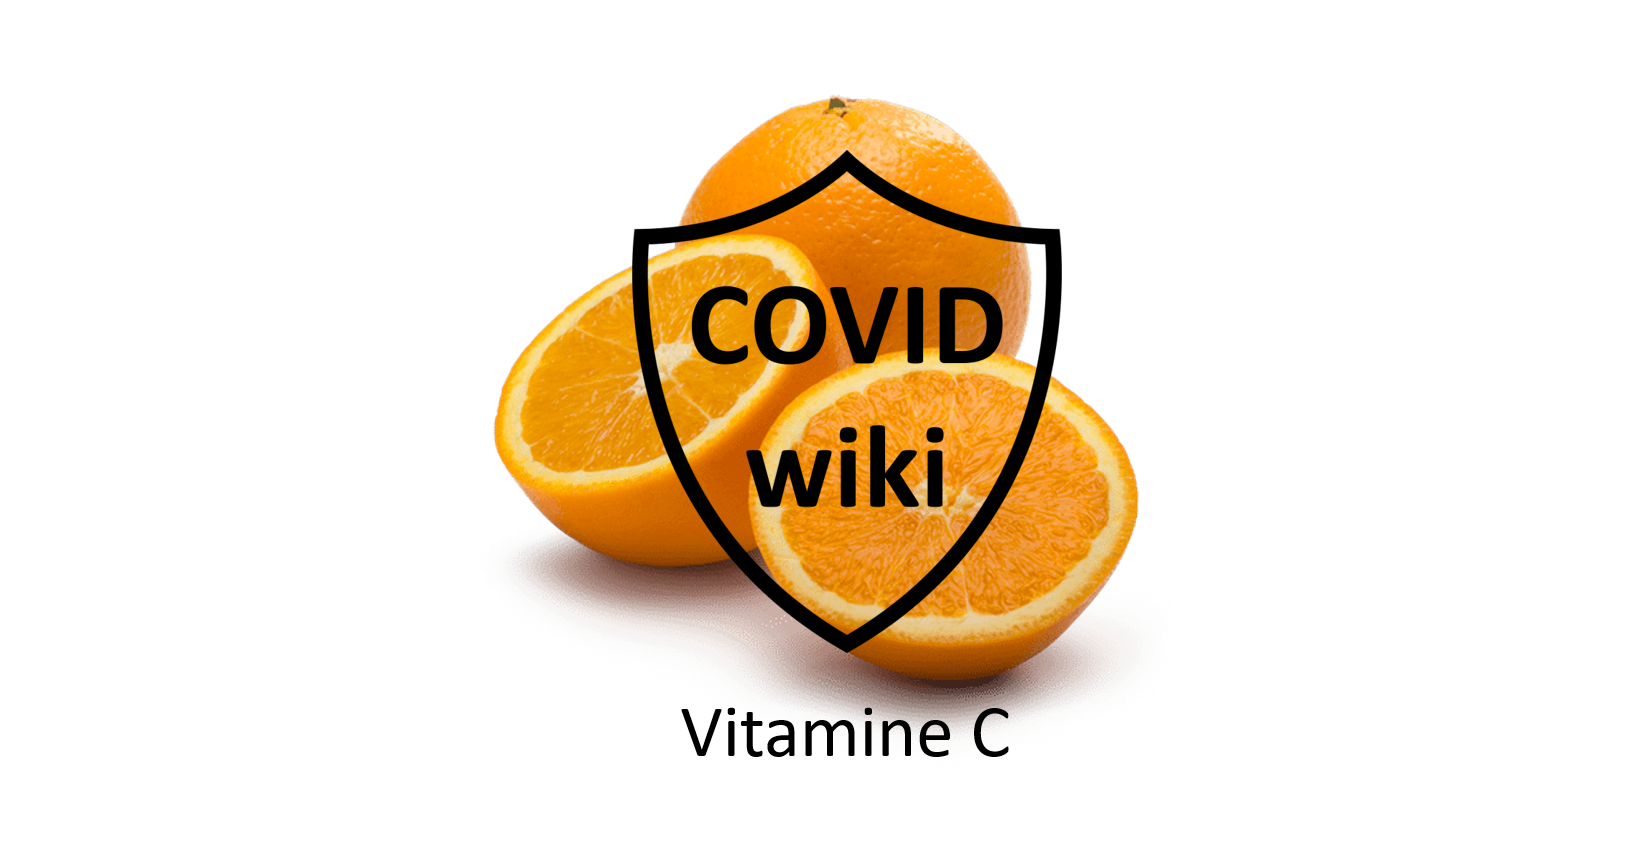 Beschermt vitamine C tegen COVID-19